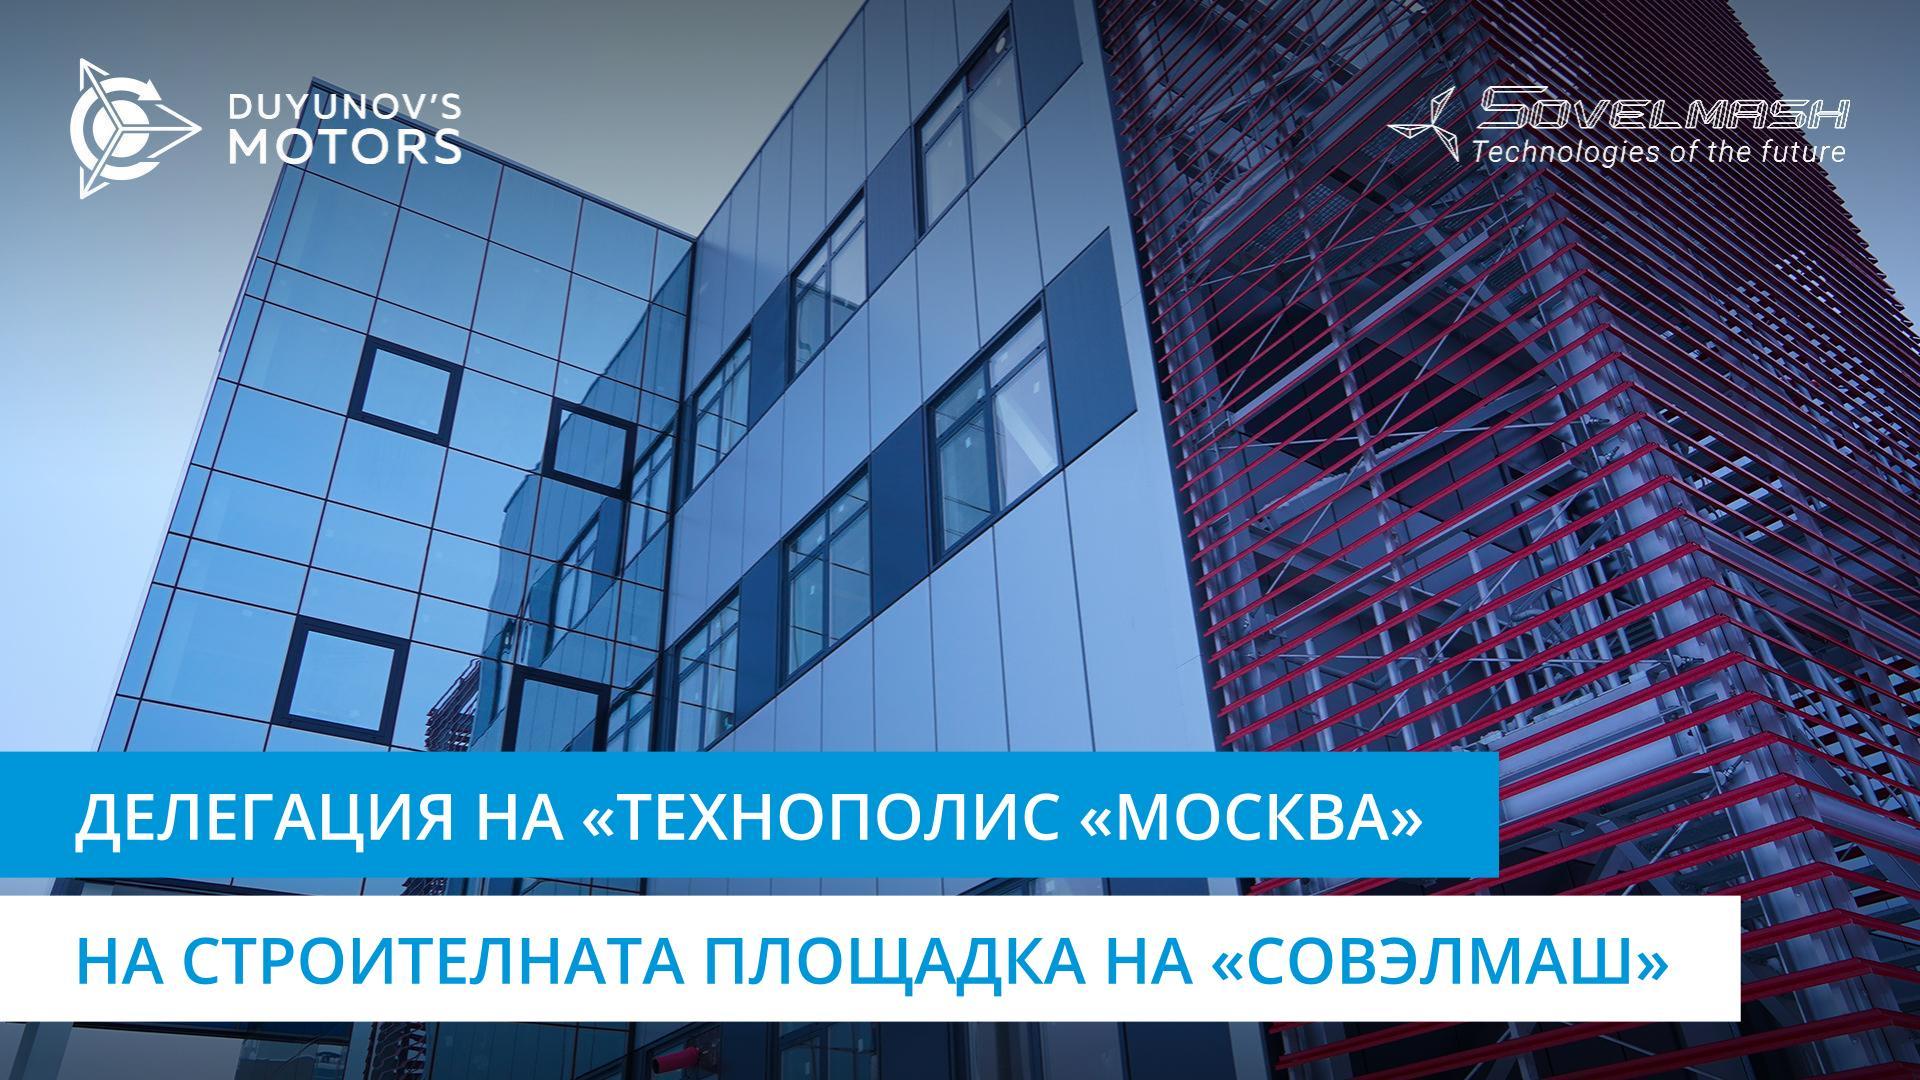 Стоплиха се и се изненадаха: представители на «Технополис «Москва» посетиха строителната площадка на «Совэлмаш»